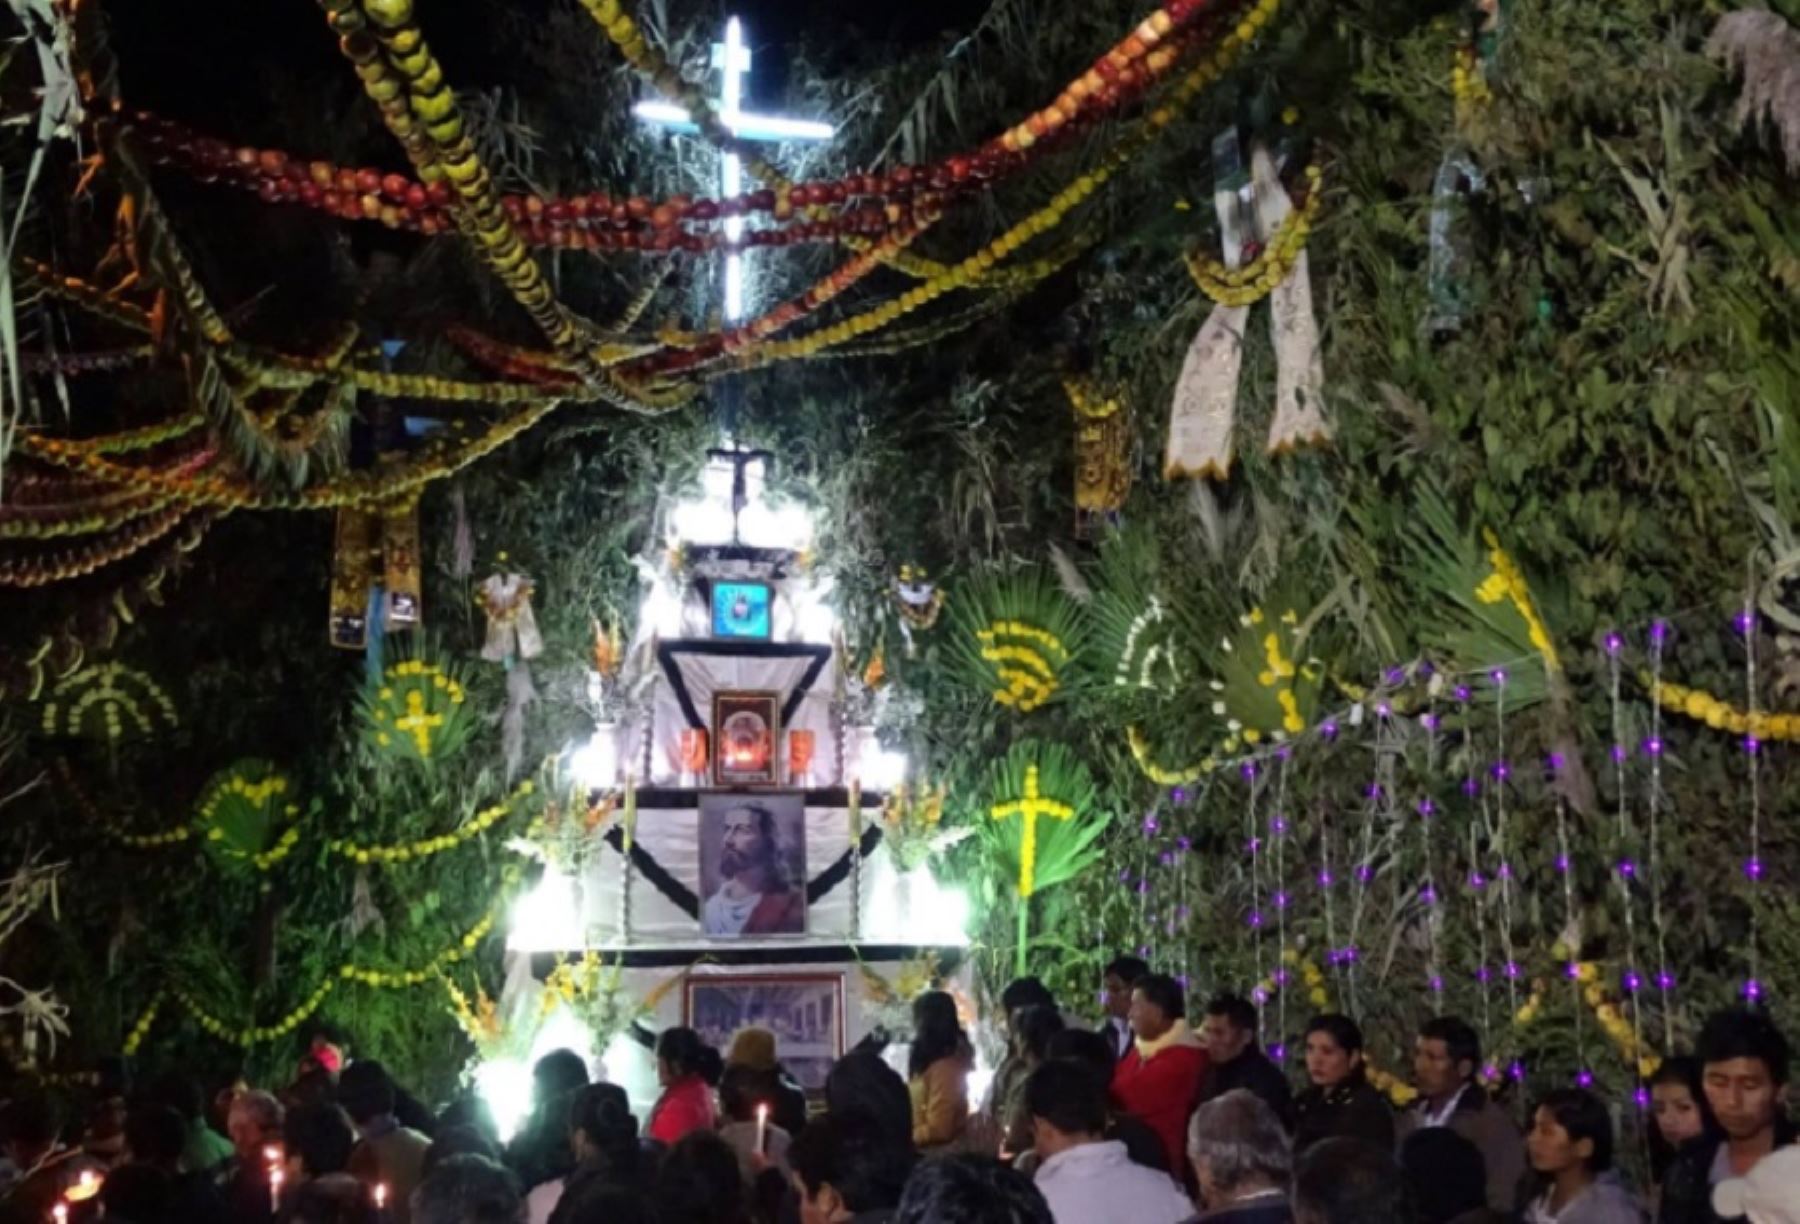 Holy week celebration in Pampacolca, Peru.